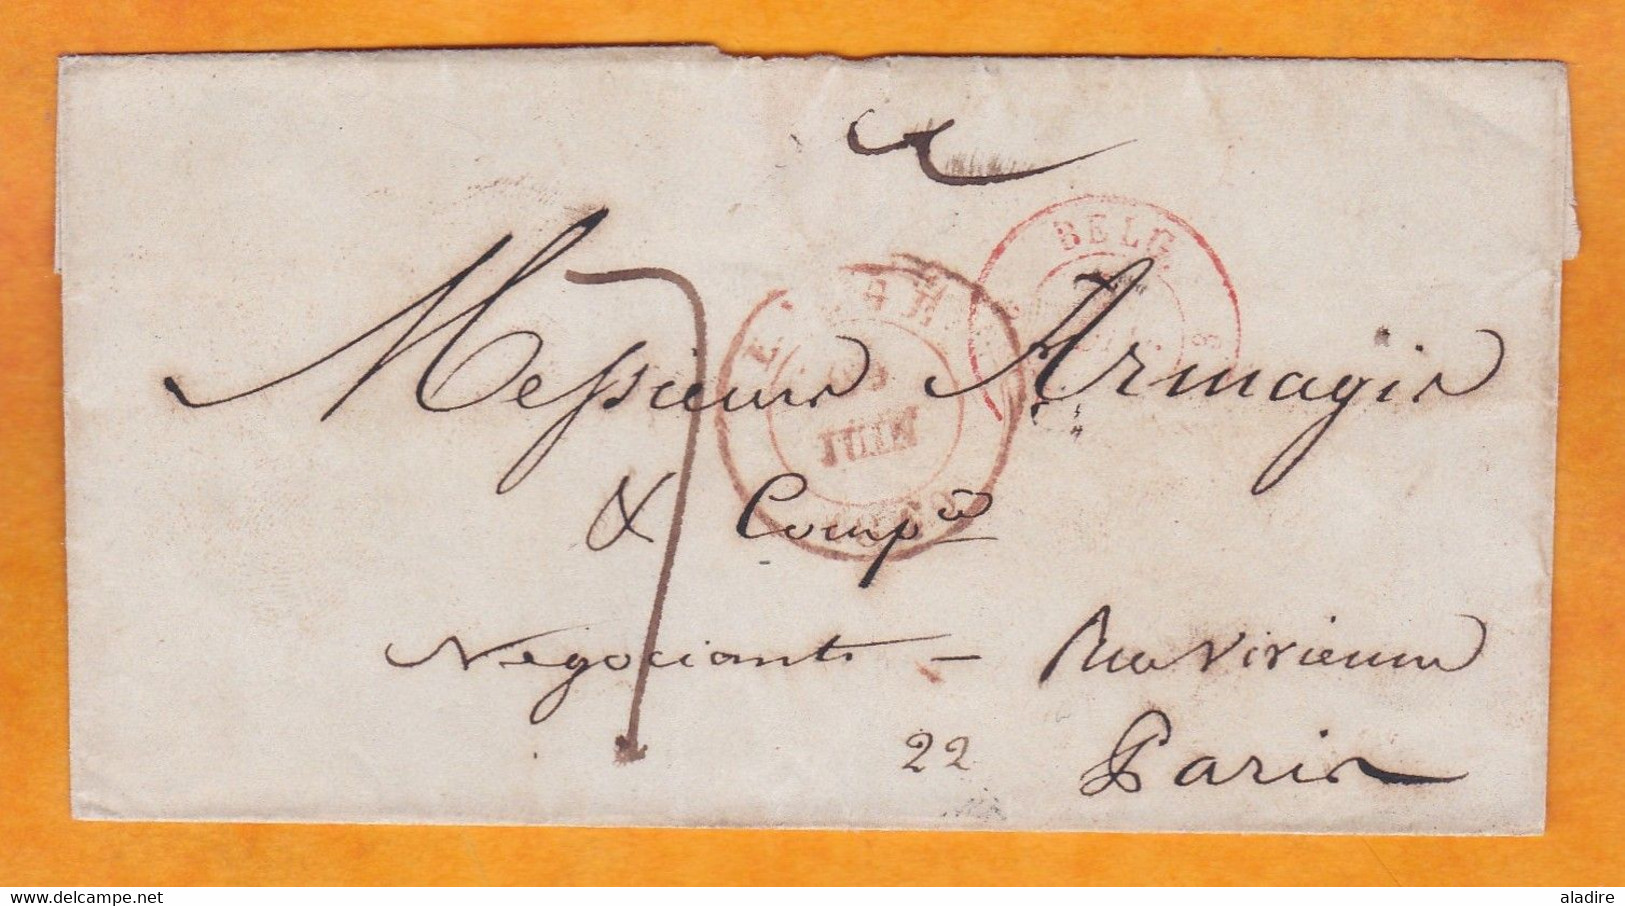 1849 - Enveloppe Pliée De Liège, Belgique Vers Paris, France - Taxe 7 Décimes - Entrée Par Valenciennes - Poste Restante - 1830-1849 (Unabhängiges Belgien)